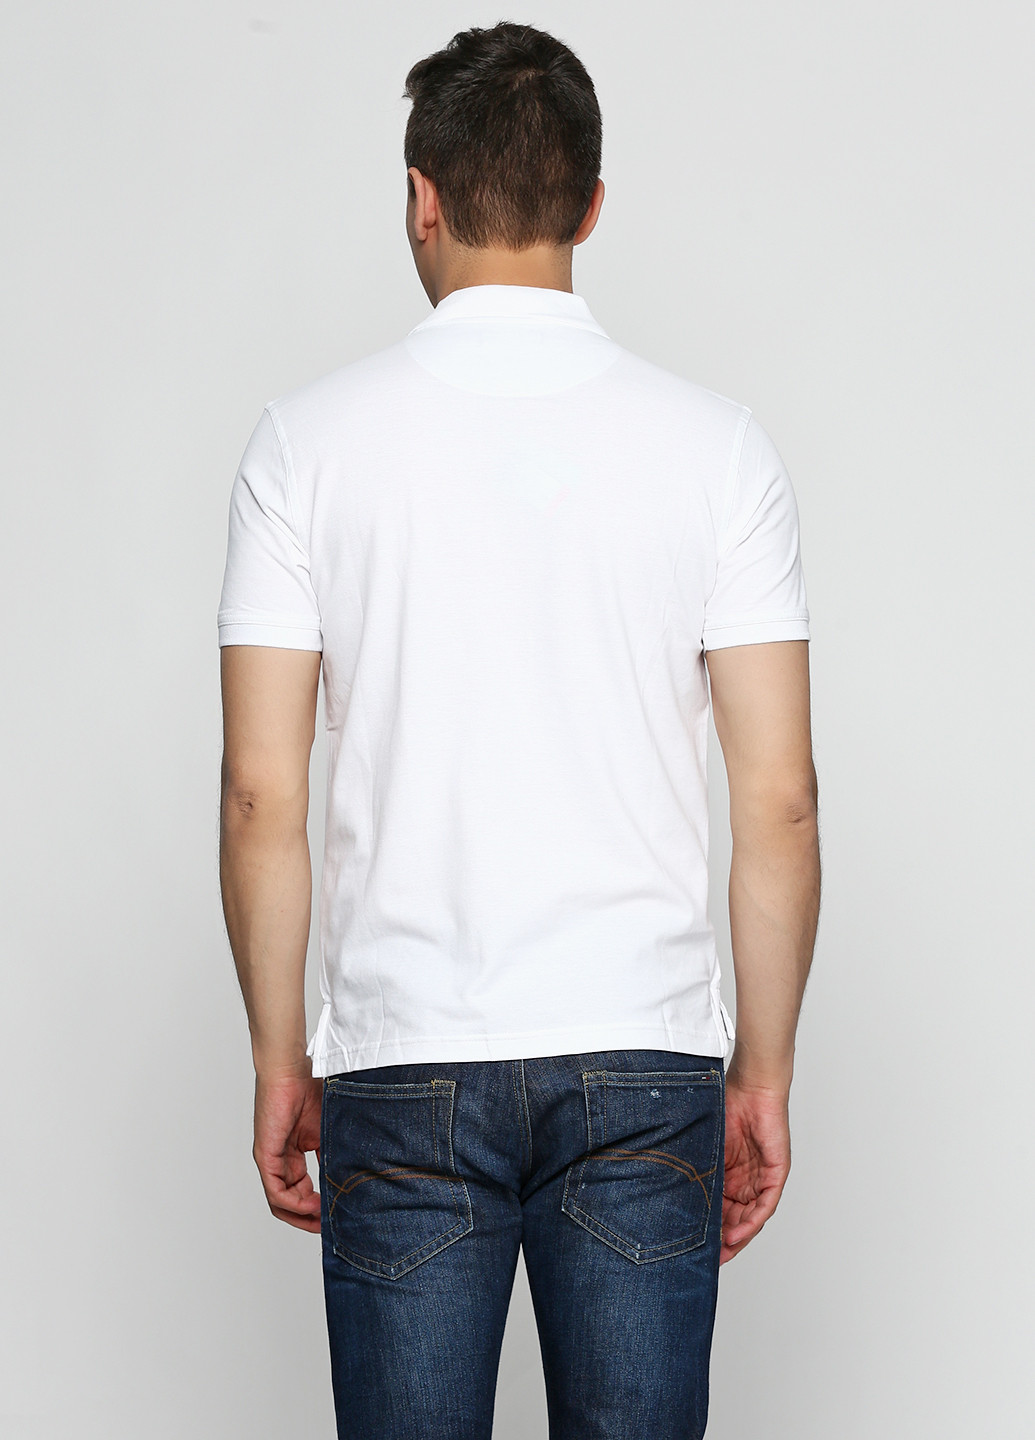 Белая футболка-поло для мужчин Pierre Cardin однотонная